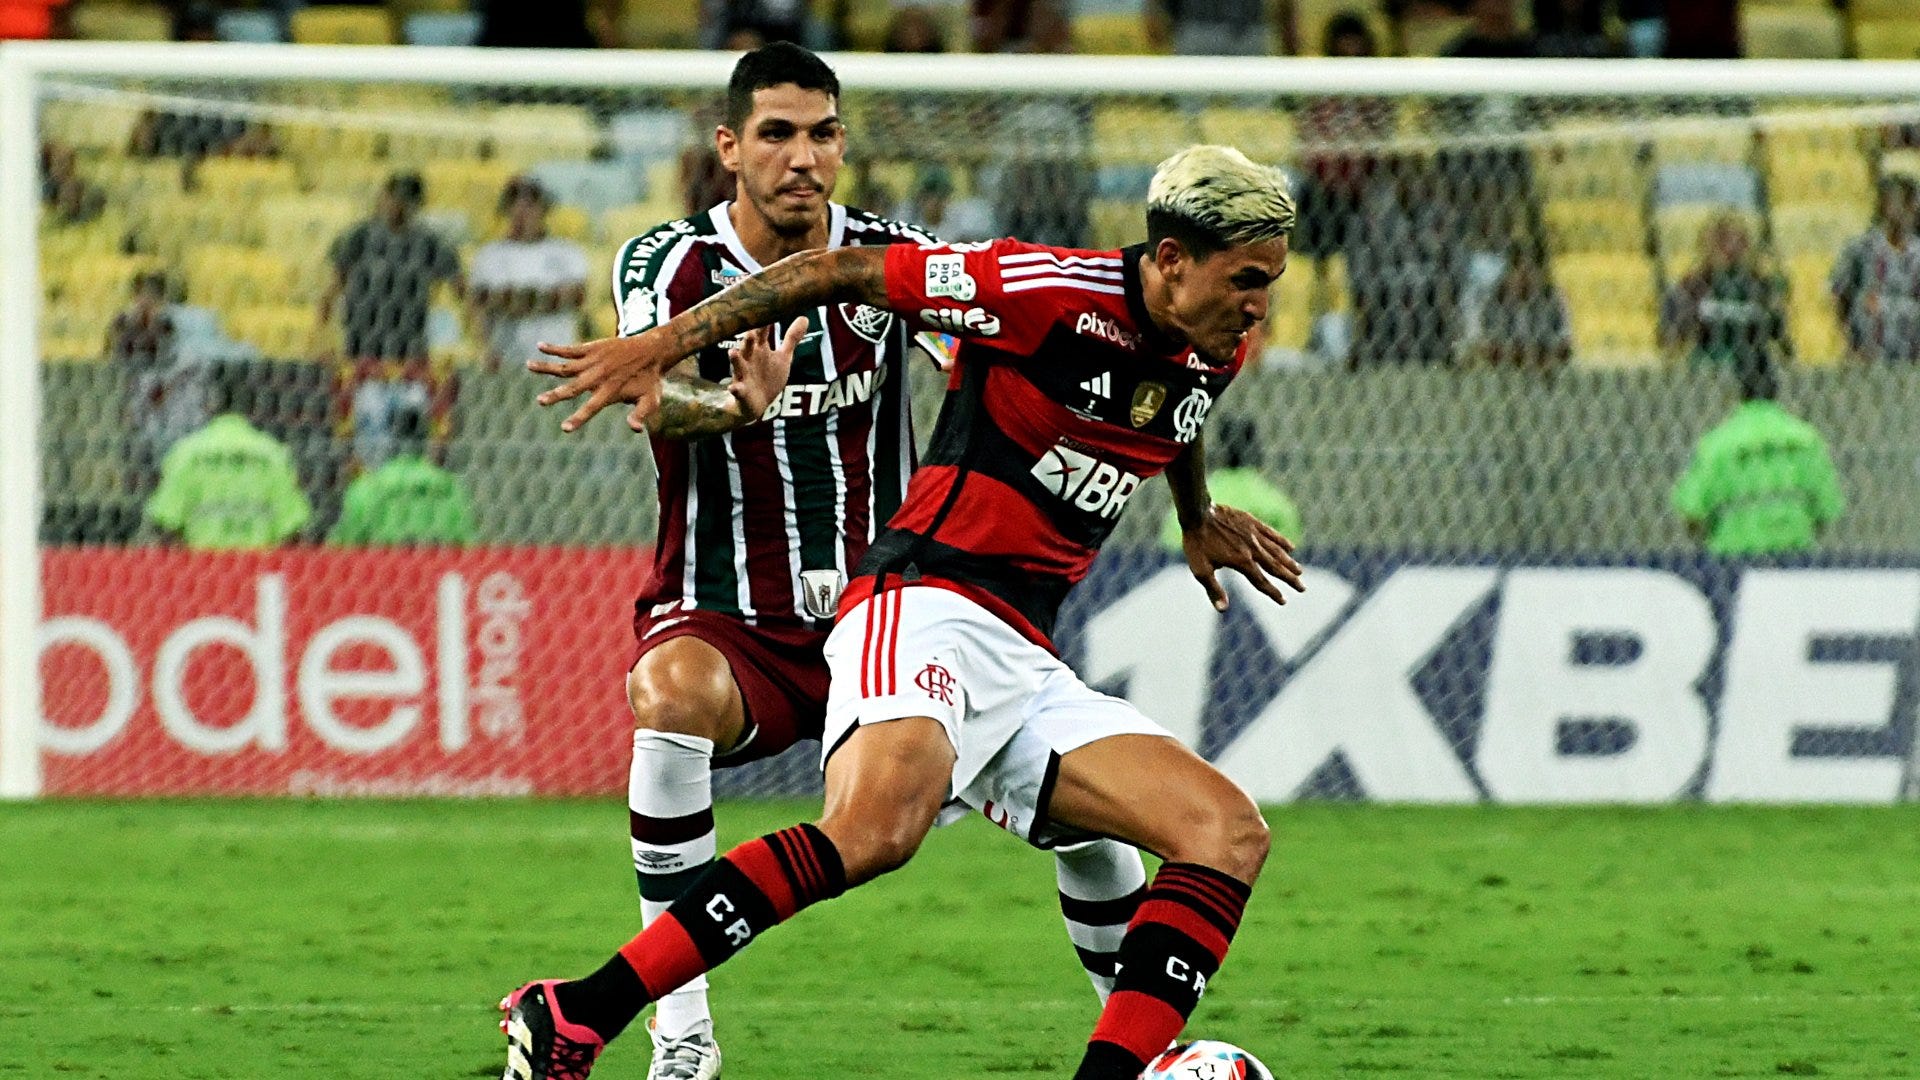 PRÊMIOS: Confira os ganhadores do bolão Rondoniaovivo do Campeonato Carioca